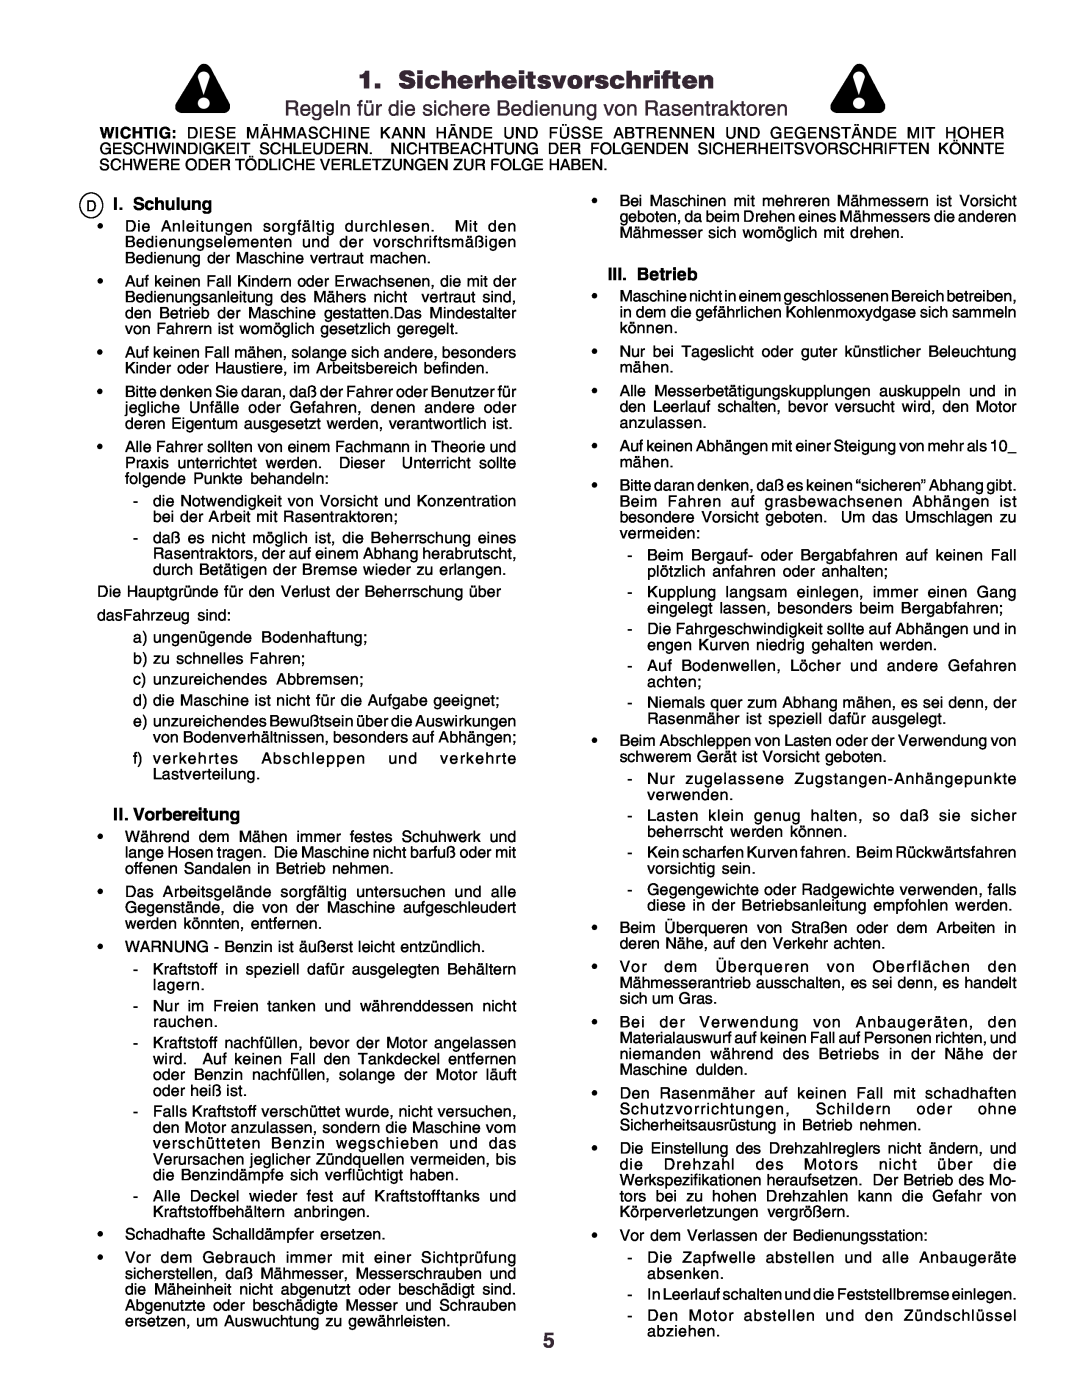 Husqvarna YTH170 instruction manual Sicherheitsvorschriften, I. Schulung, II.Vorbereitung, III.Betrieb 